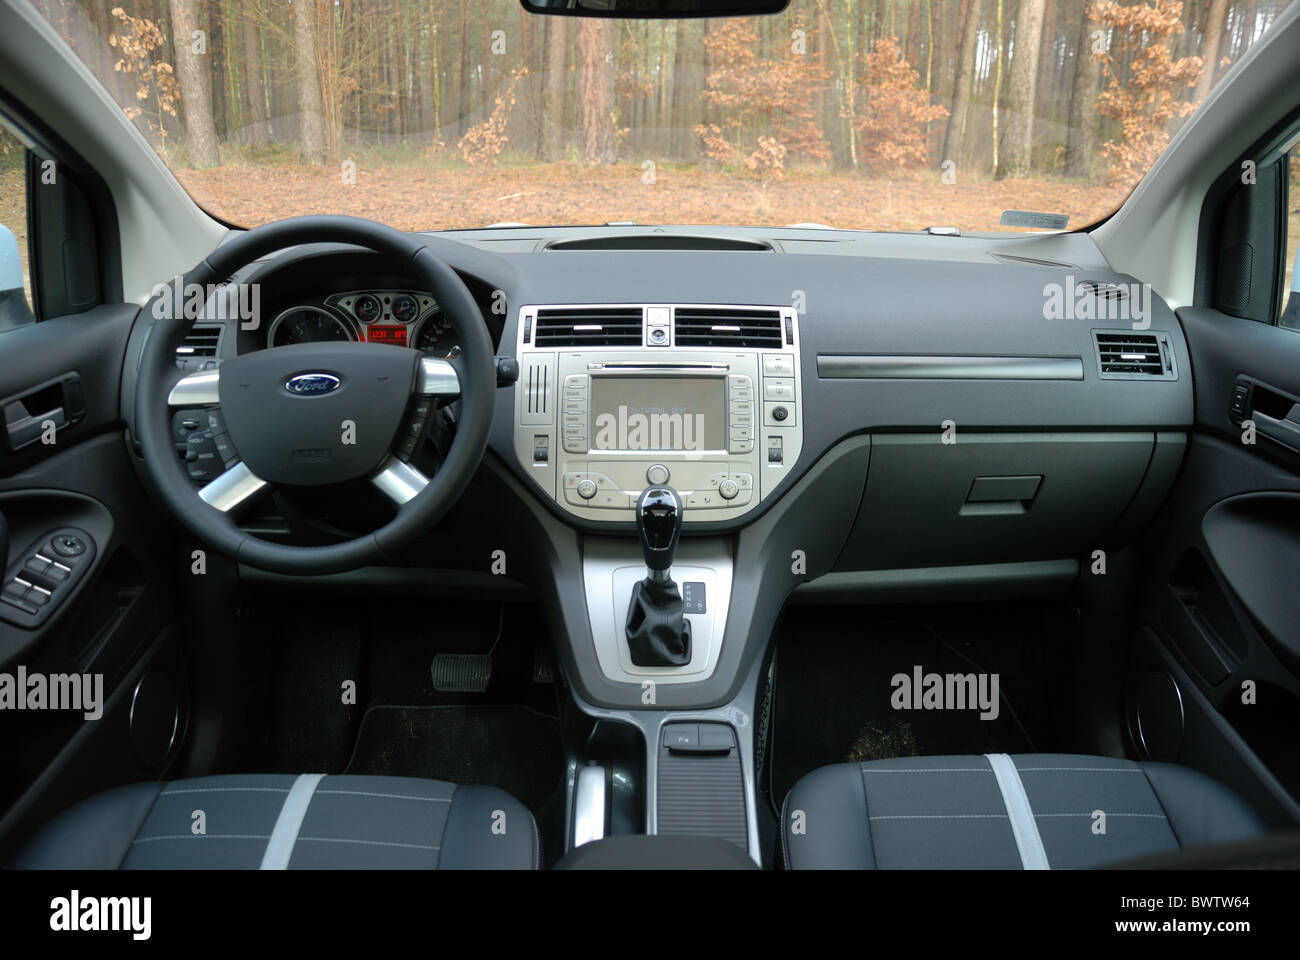 Ford Kuga 2.0 TDCI AWD PowerShift - mein 2008 - beliebte deutsche Kompakt-SUV - Interieur, Mittelkonsole, PowerShift-Getriebe Stockfoto